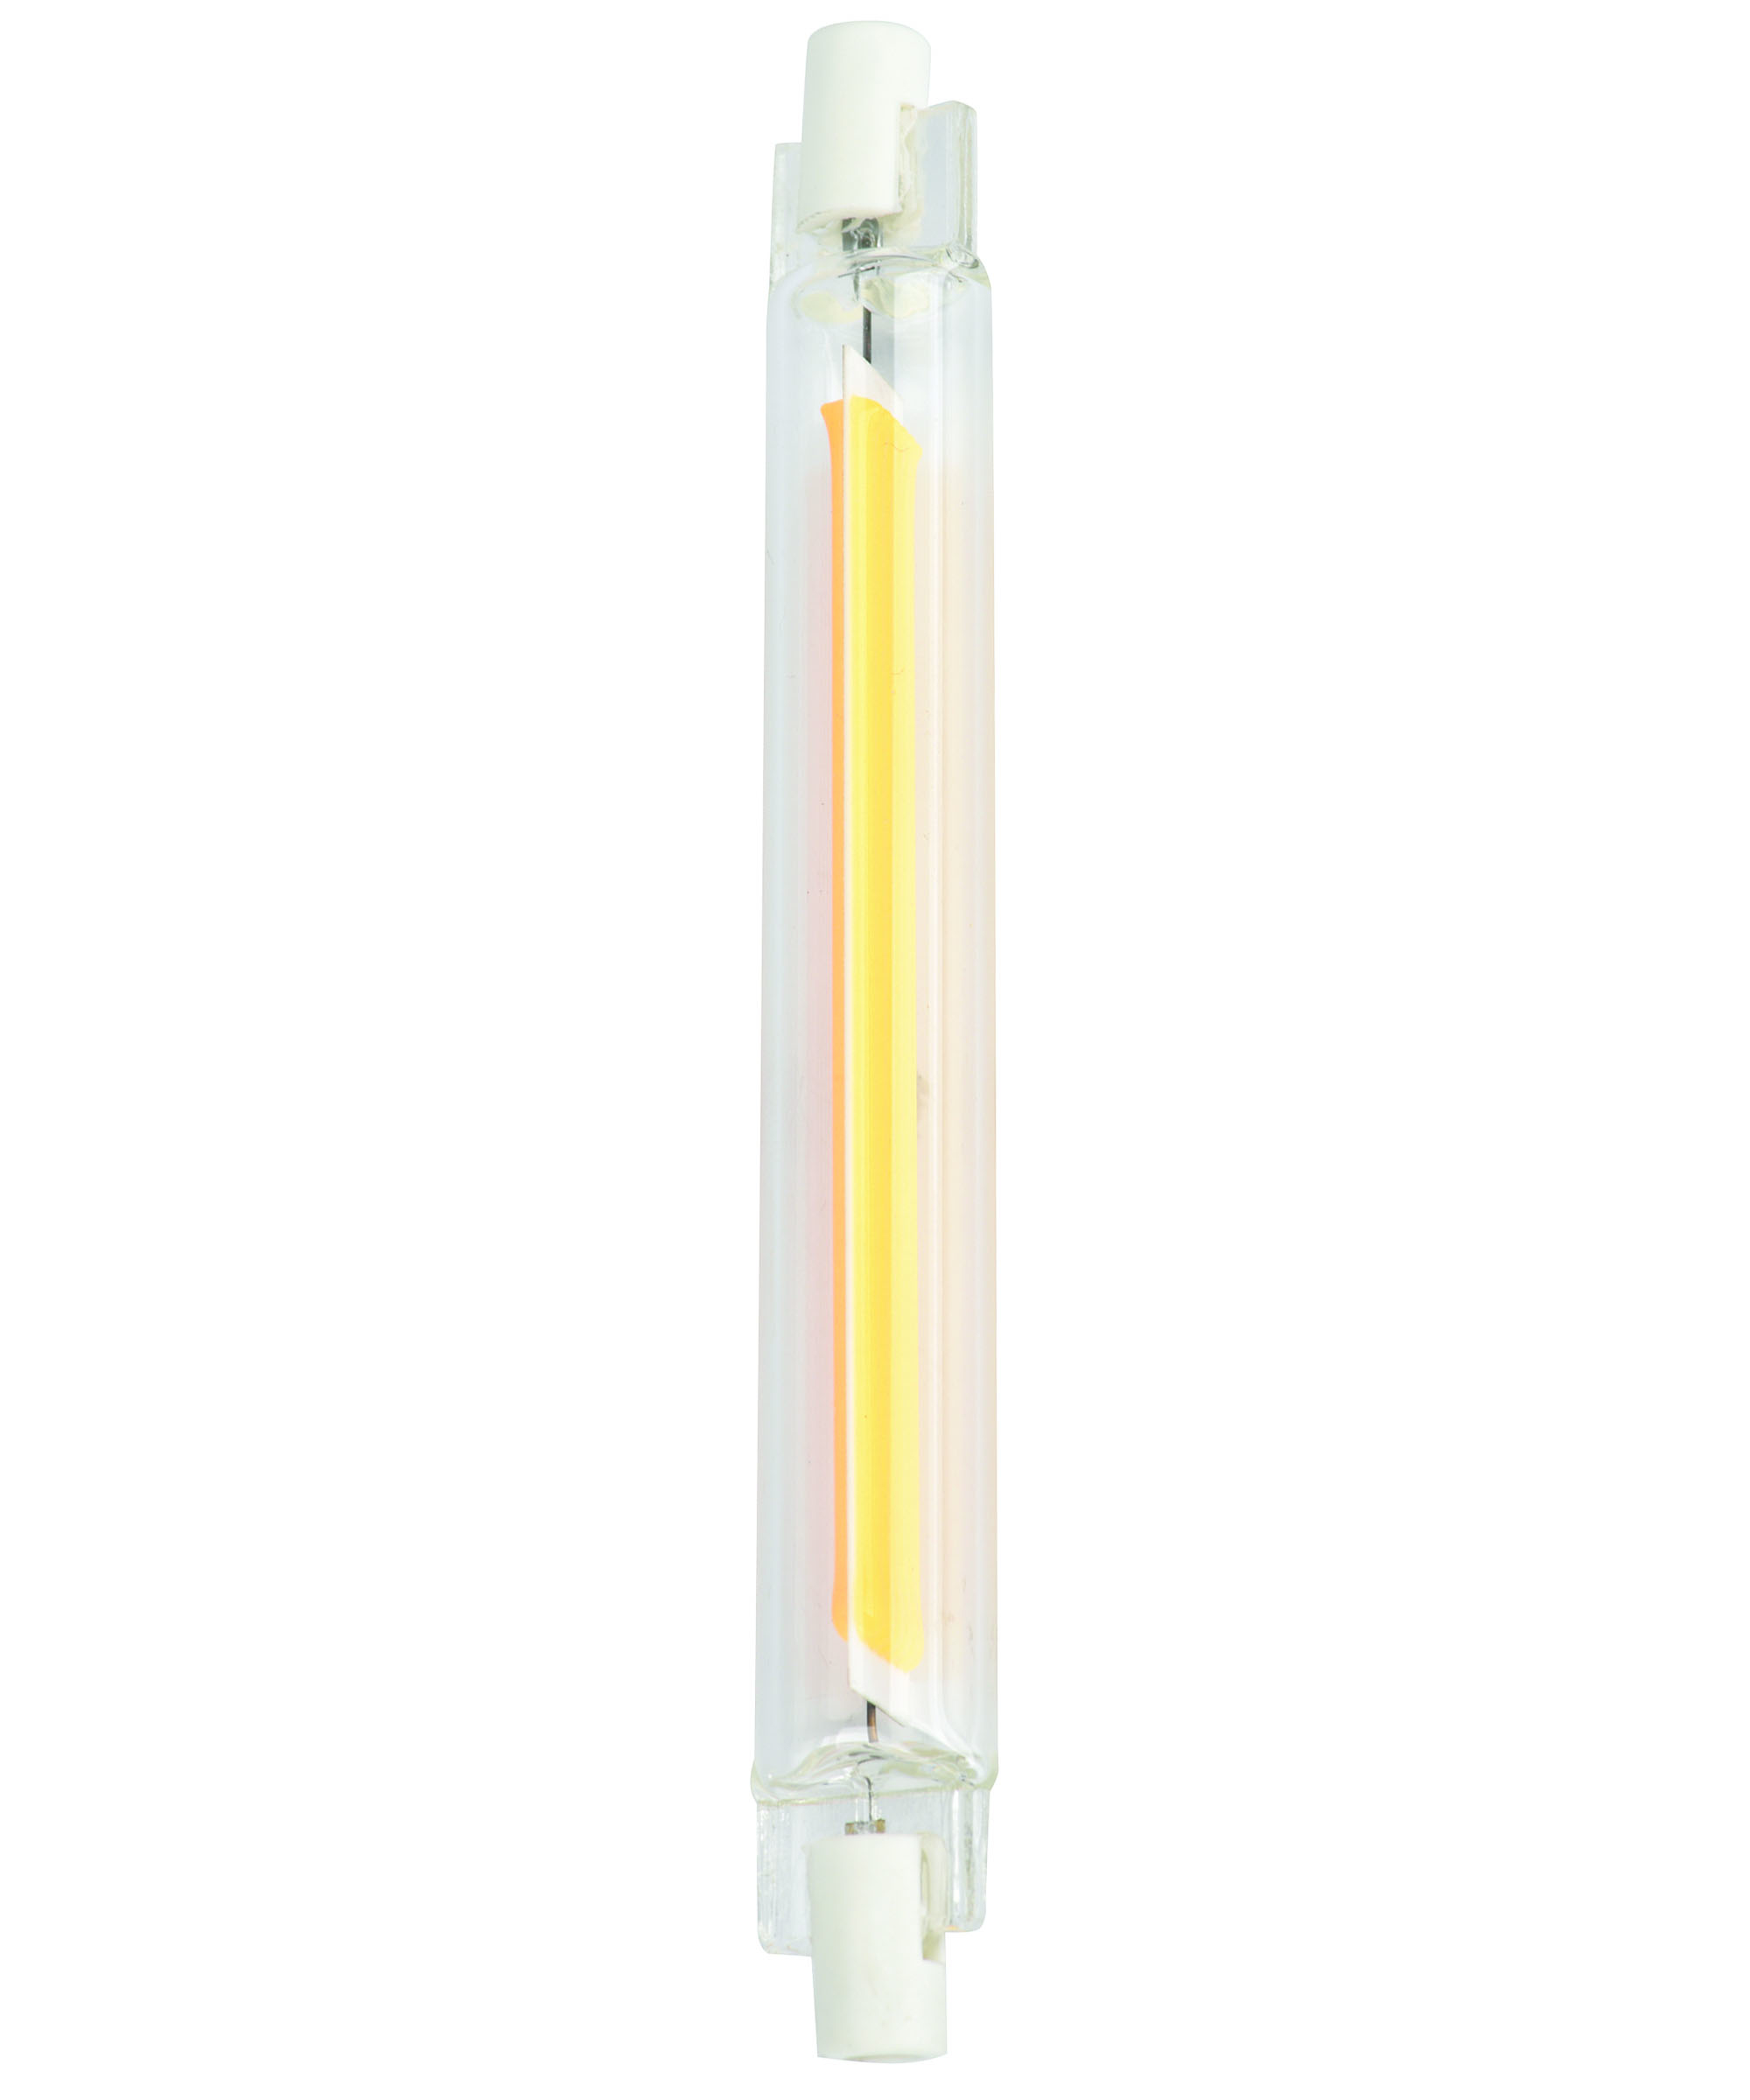 Ampoule halogène crayon R7S118 blanc chaud 230 W SYLVANIA